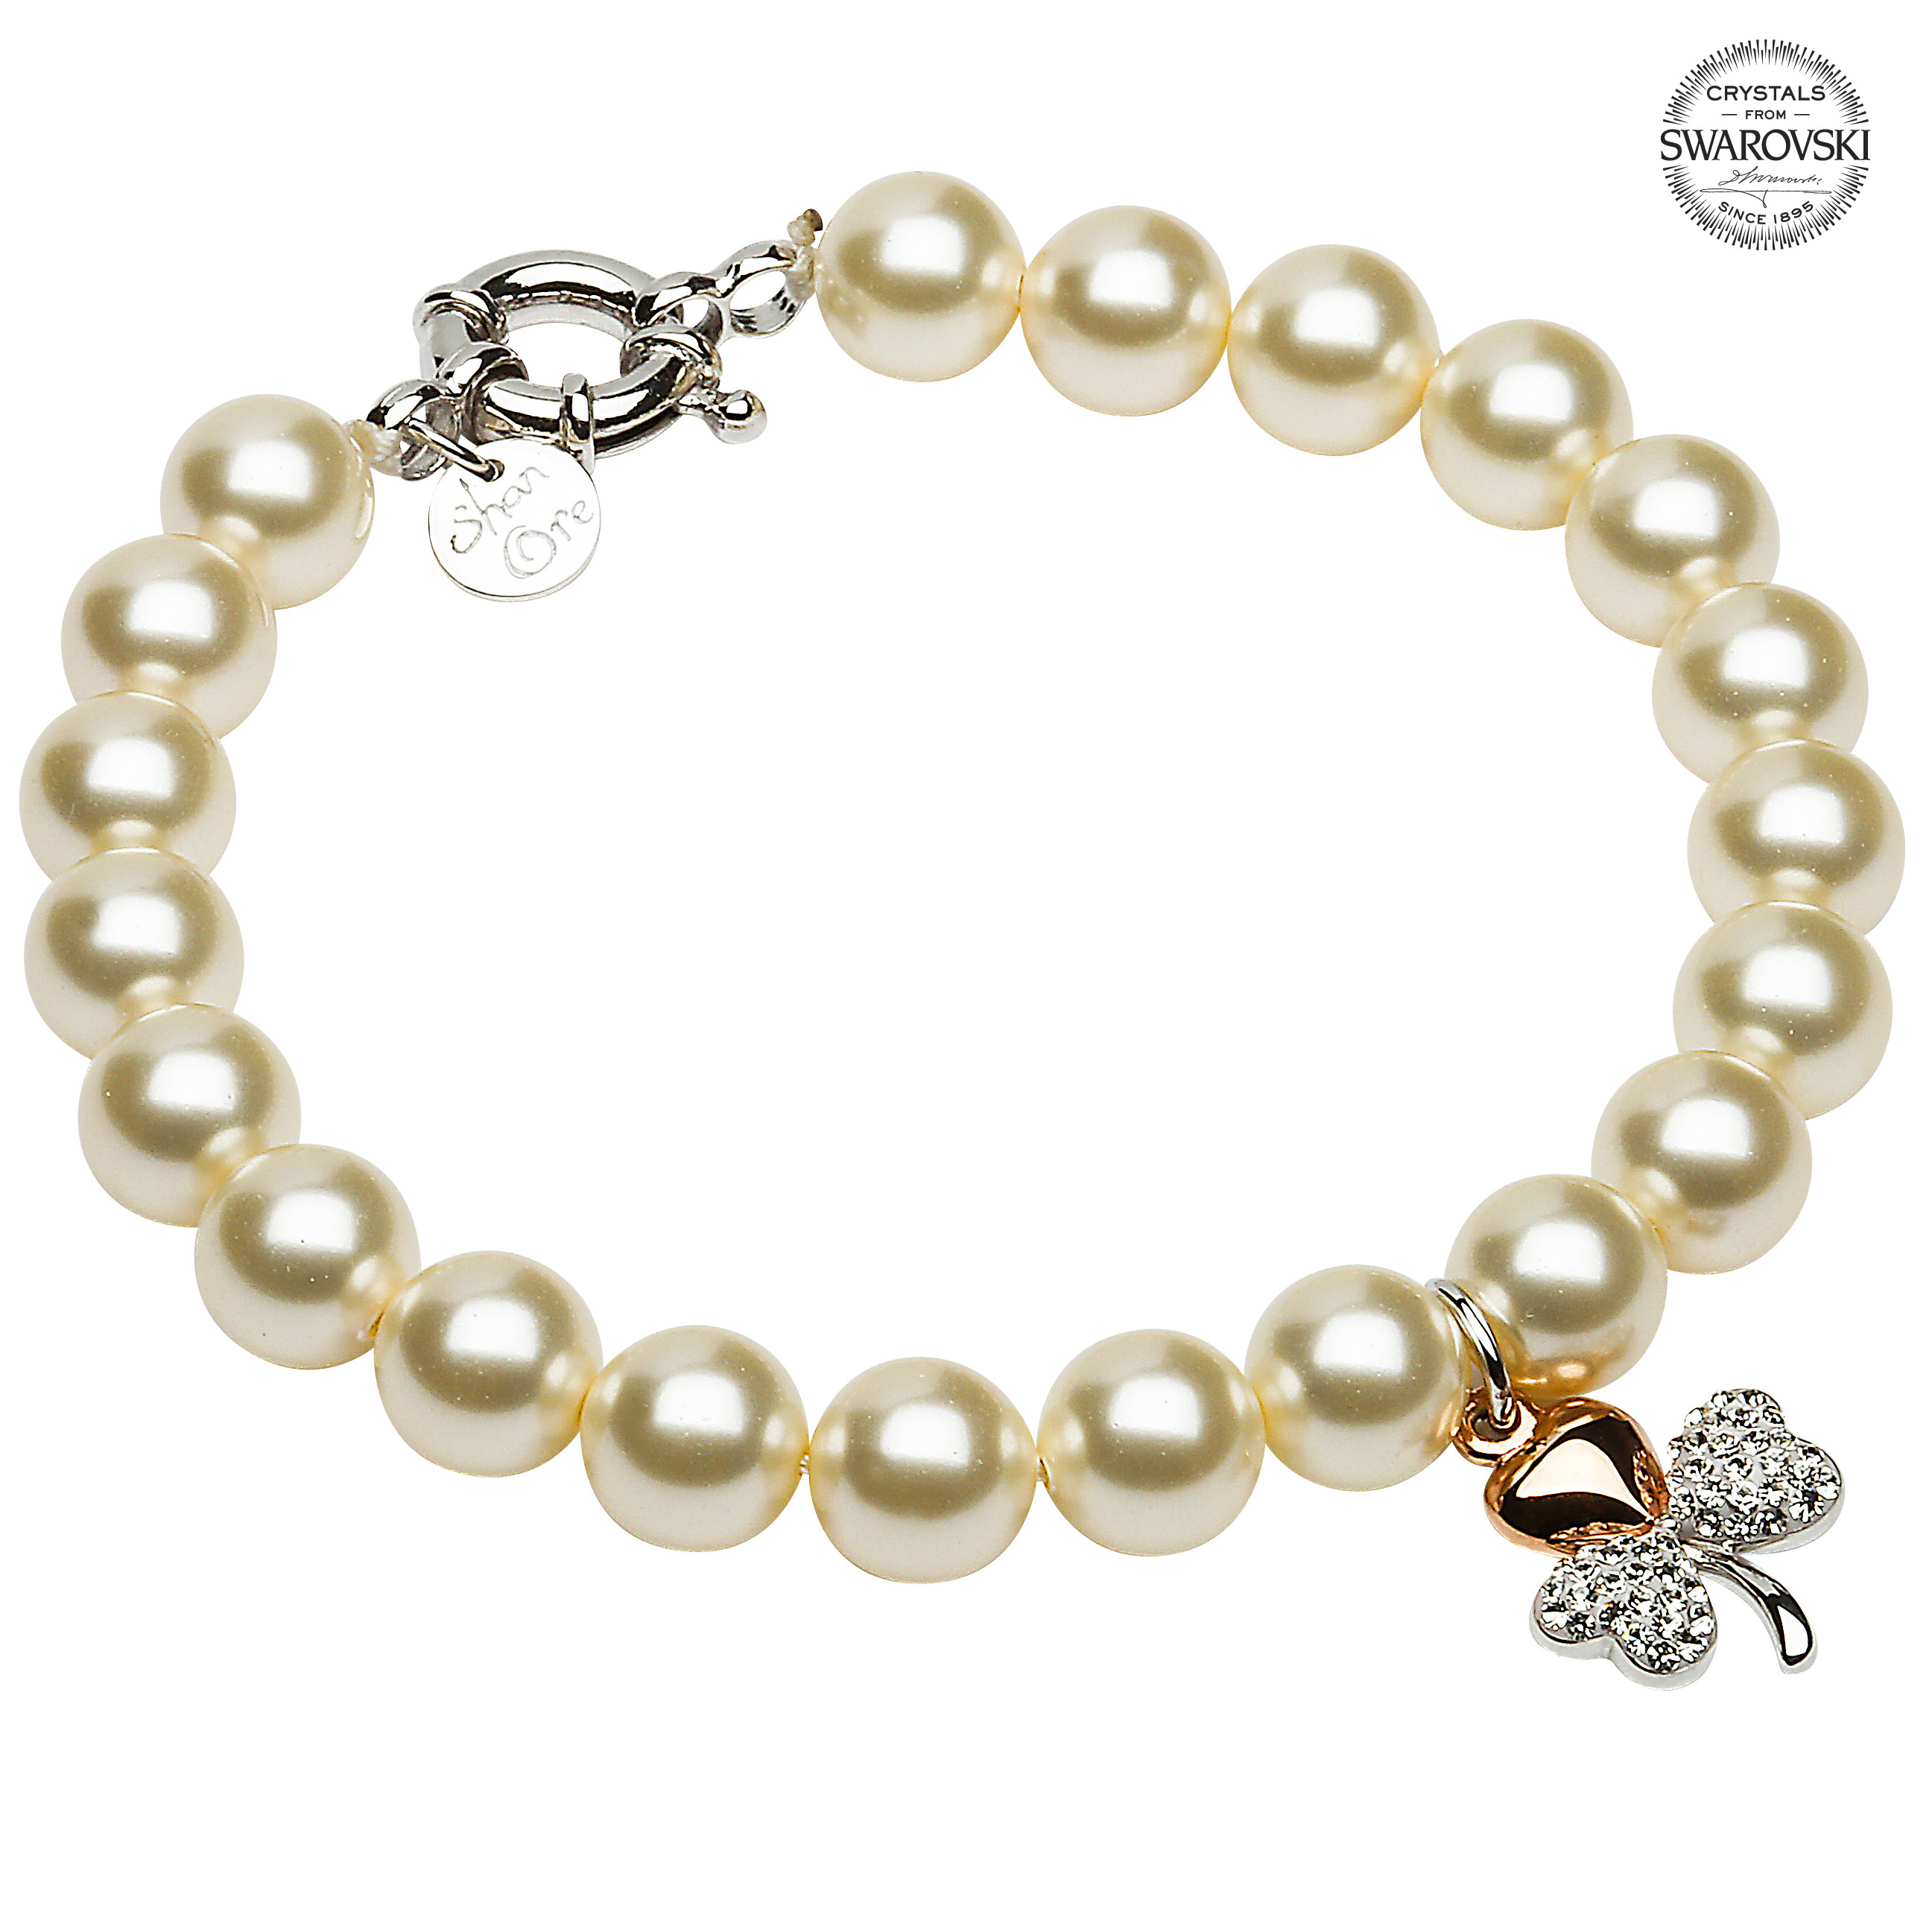 Product image for Shamrock Bracelet - Gold Plated Shamrock Pearl Bracelet Adorned with Swarovski Crystals